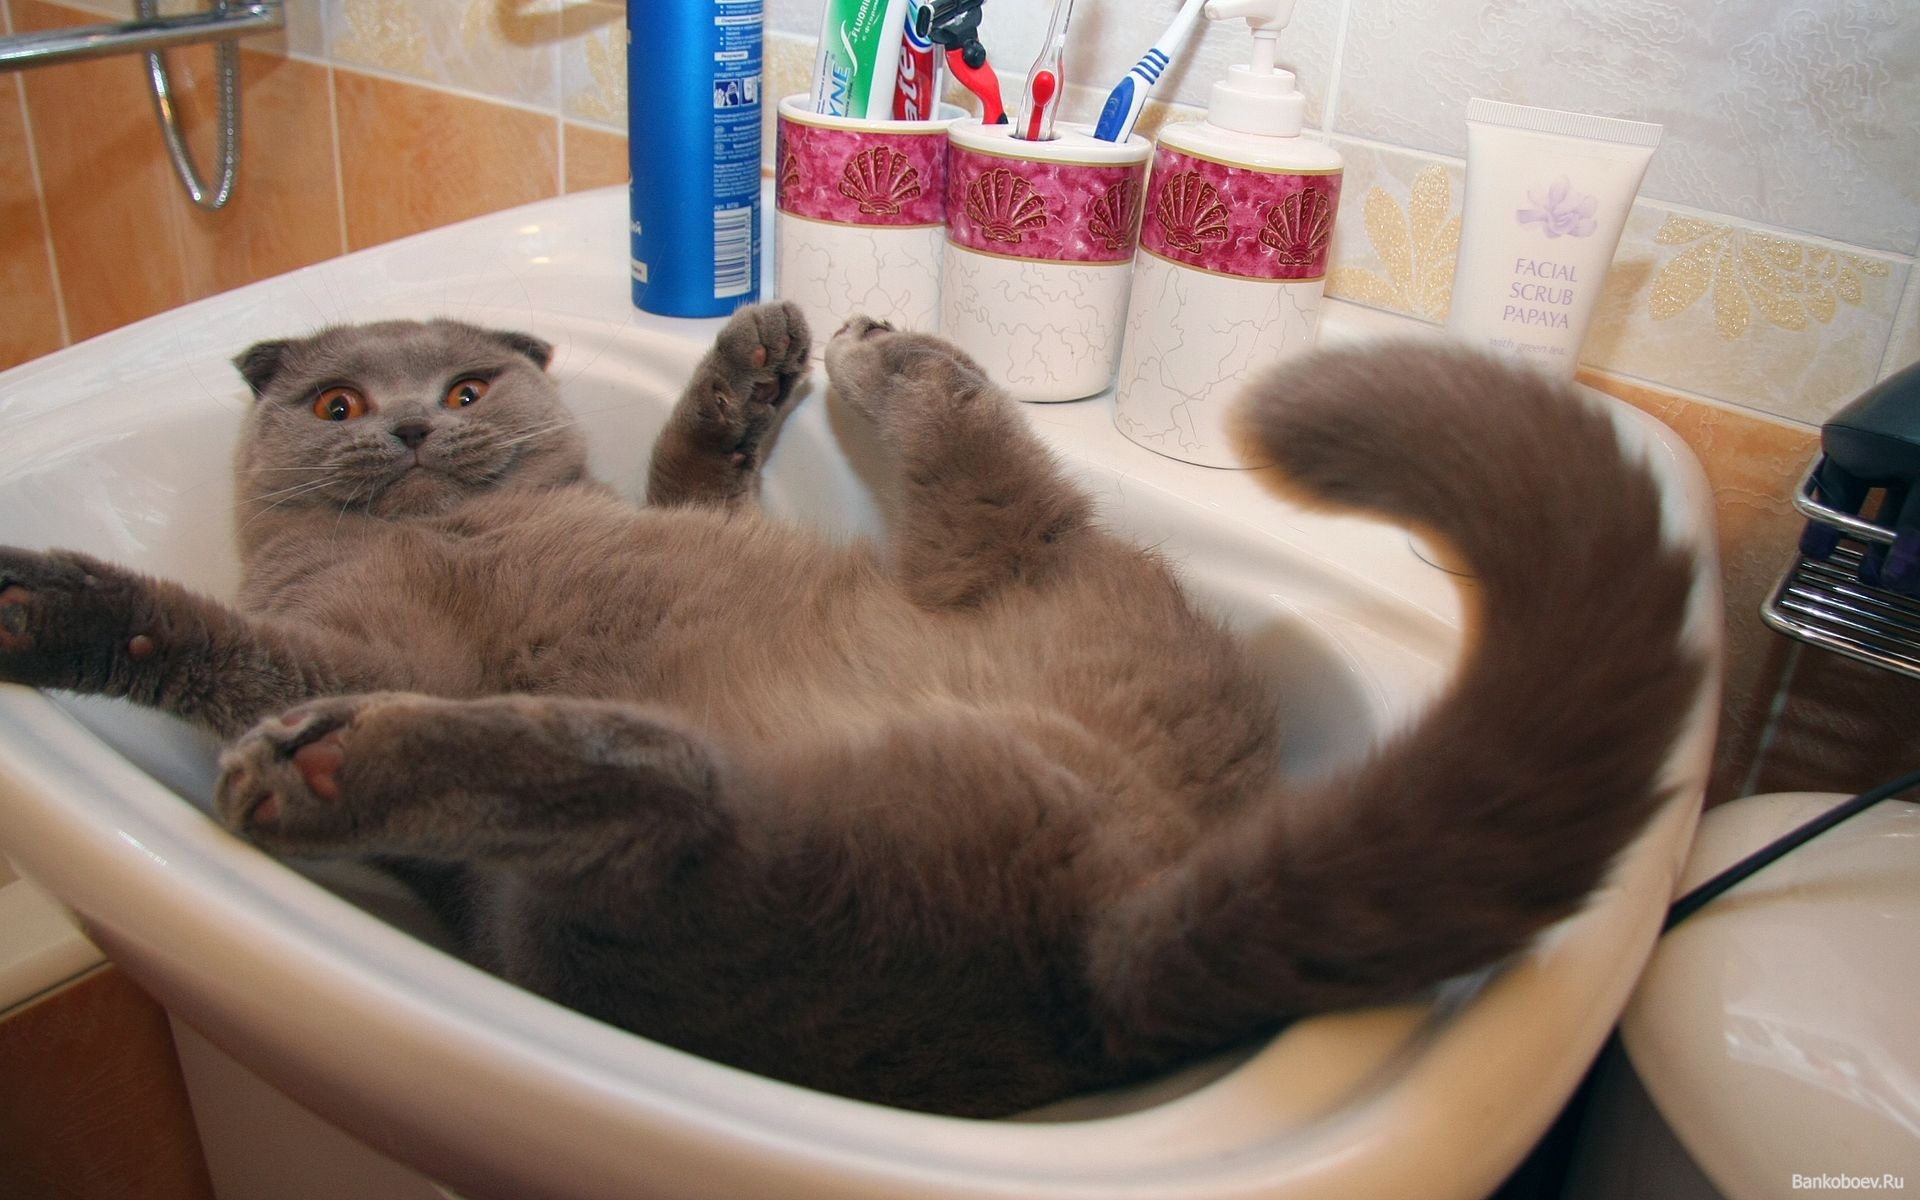 Ютуб юмор видео. Прикол. Котики приколы. Прикольные картинки котиков. Кот в ванне.